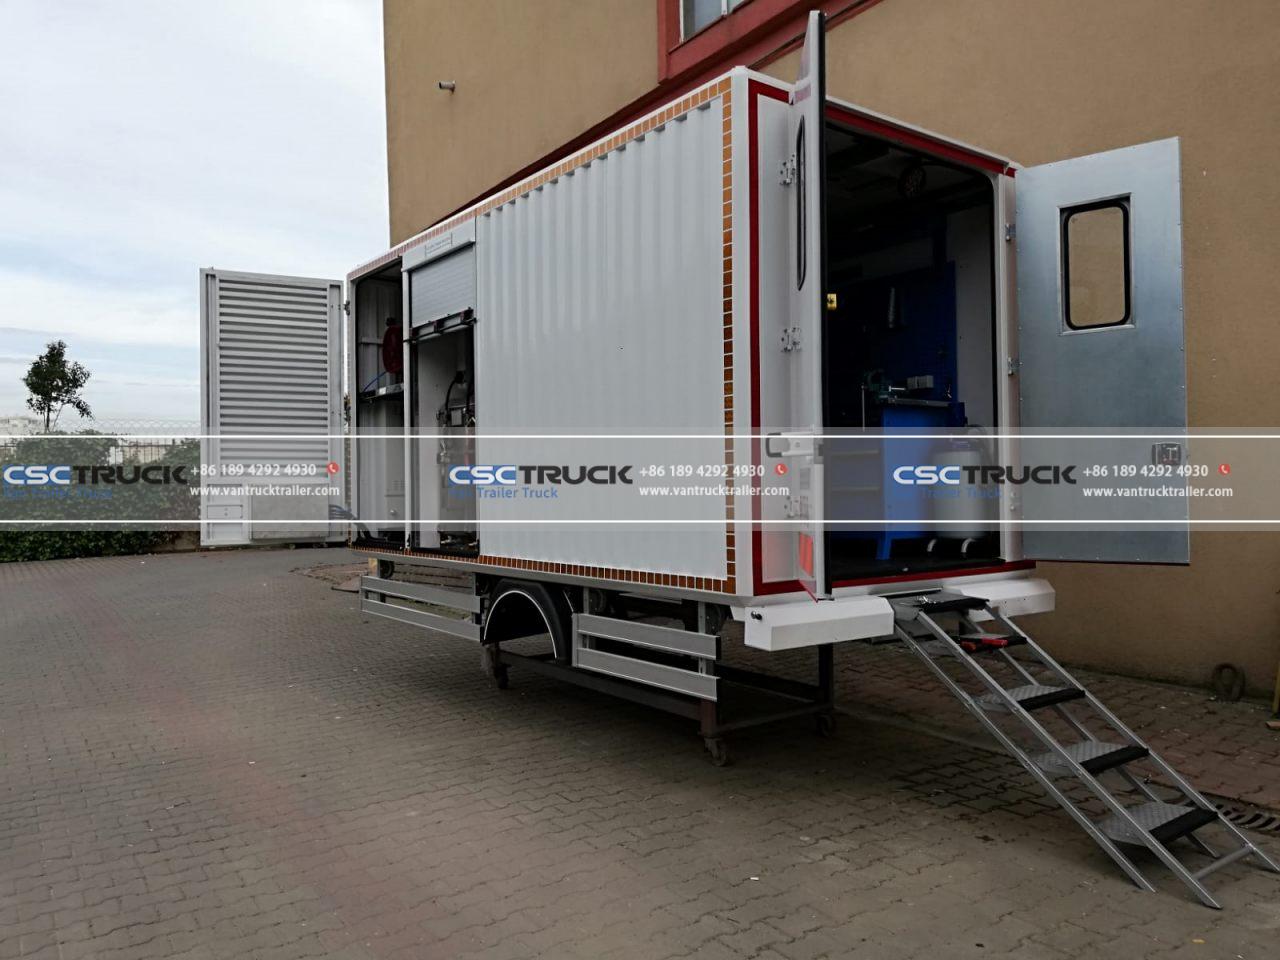 Mobile workshop truck (4)